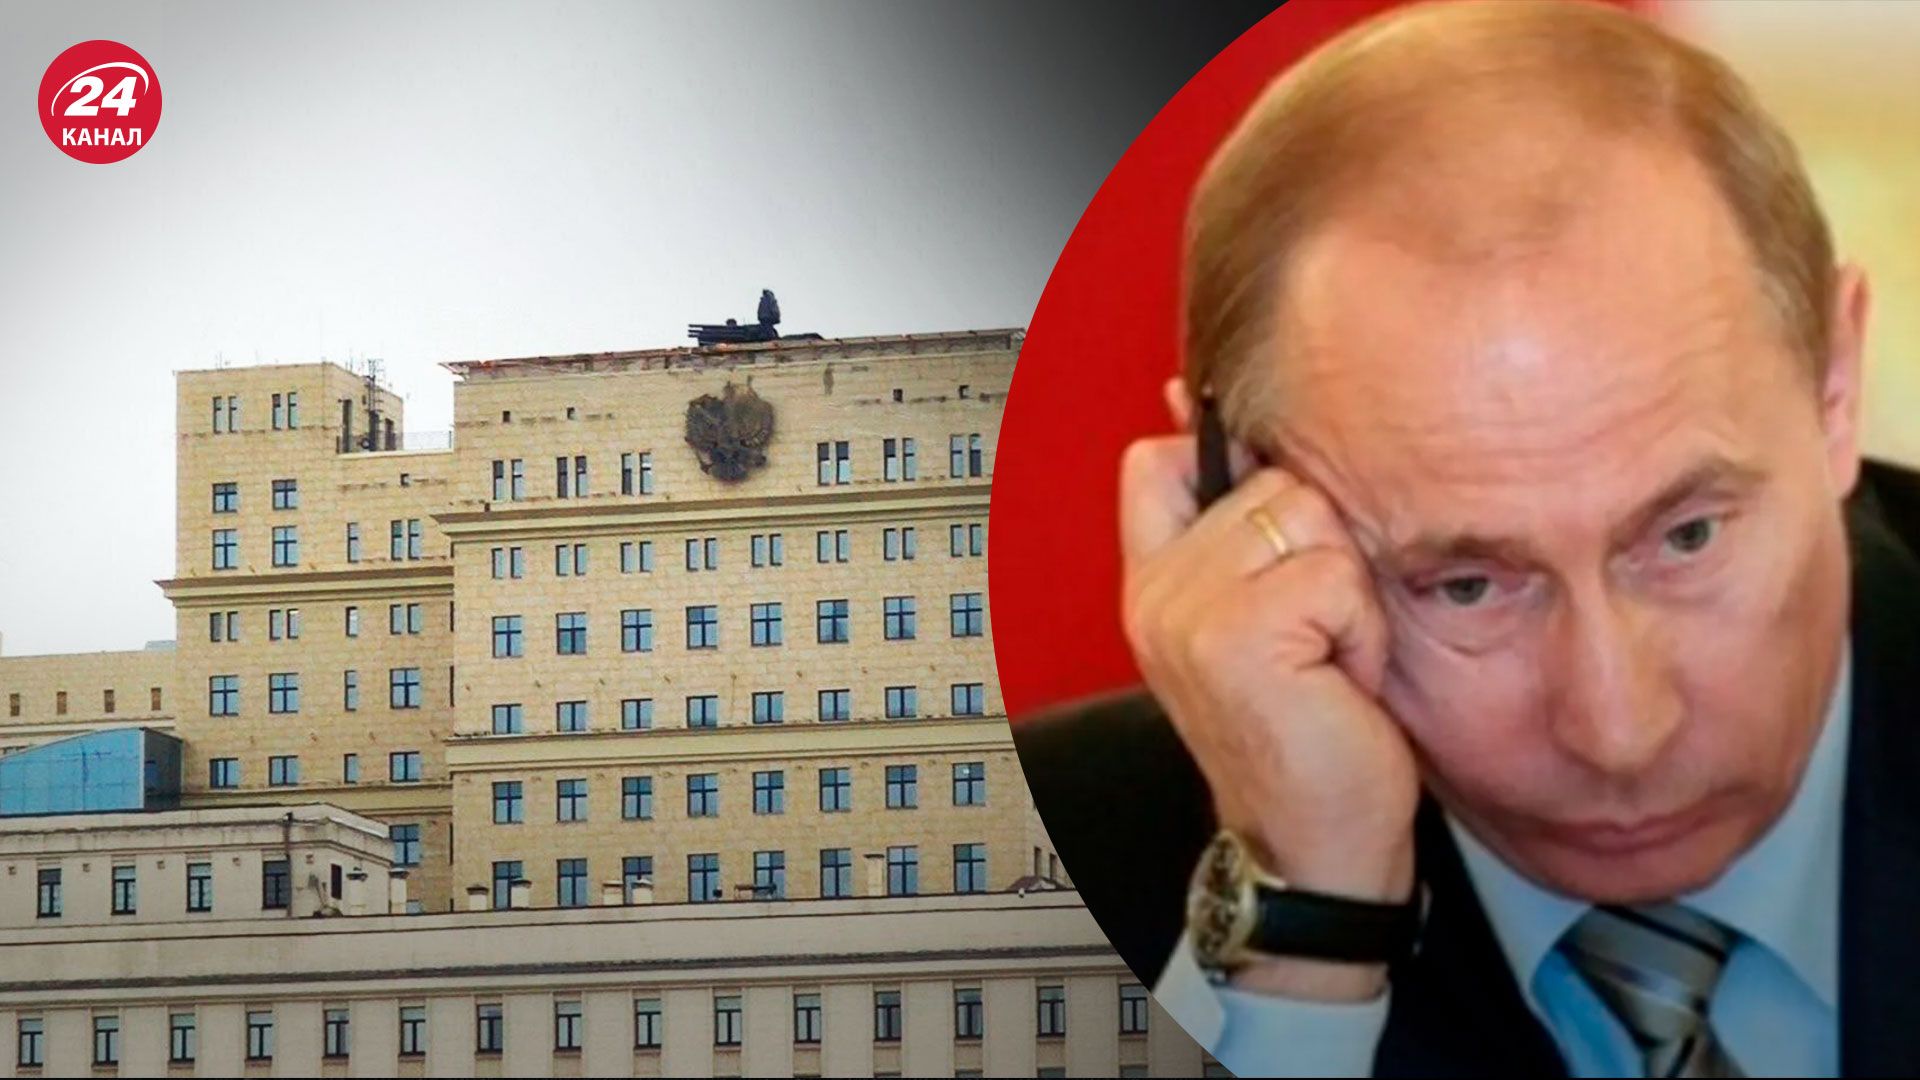 ППО на будівлях у Москві - Кремль реально наляканий - 24 Канал